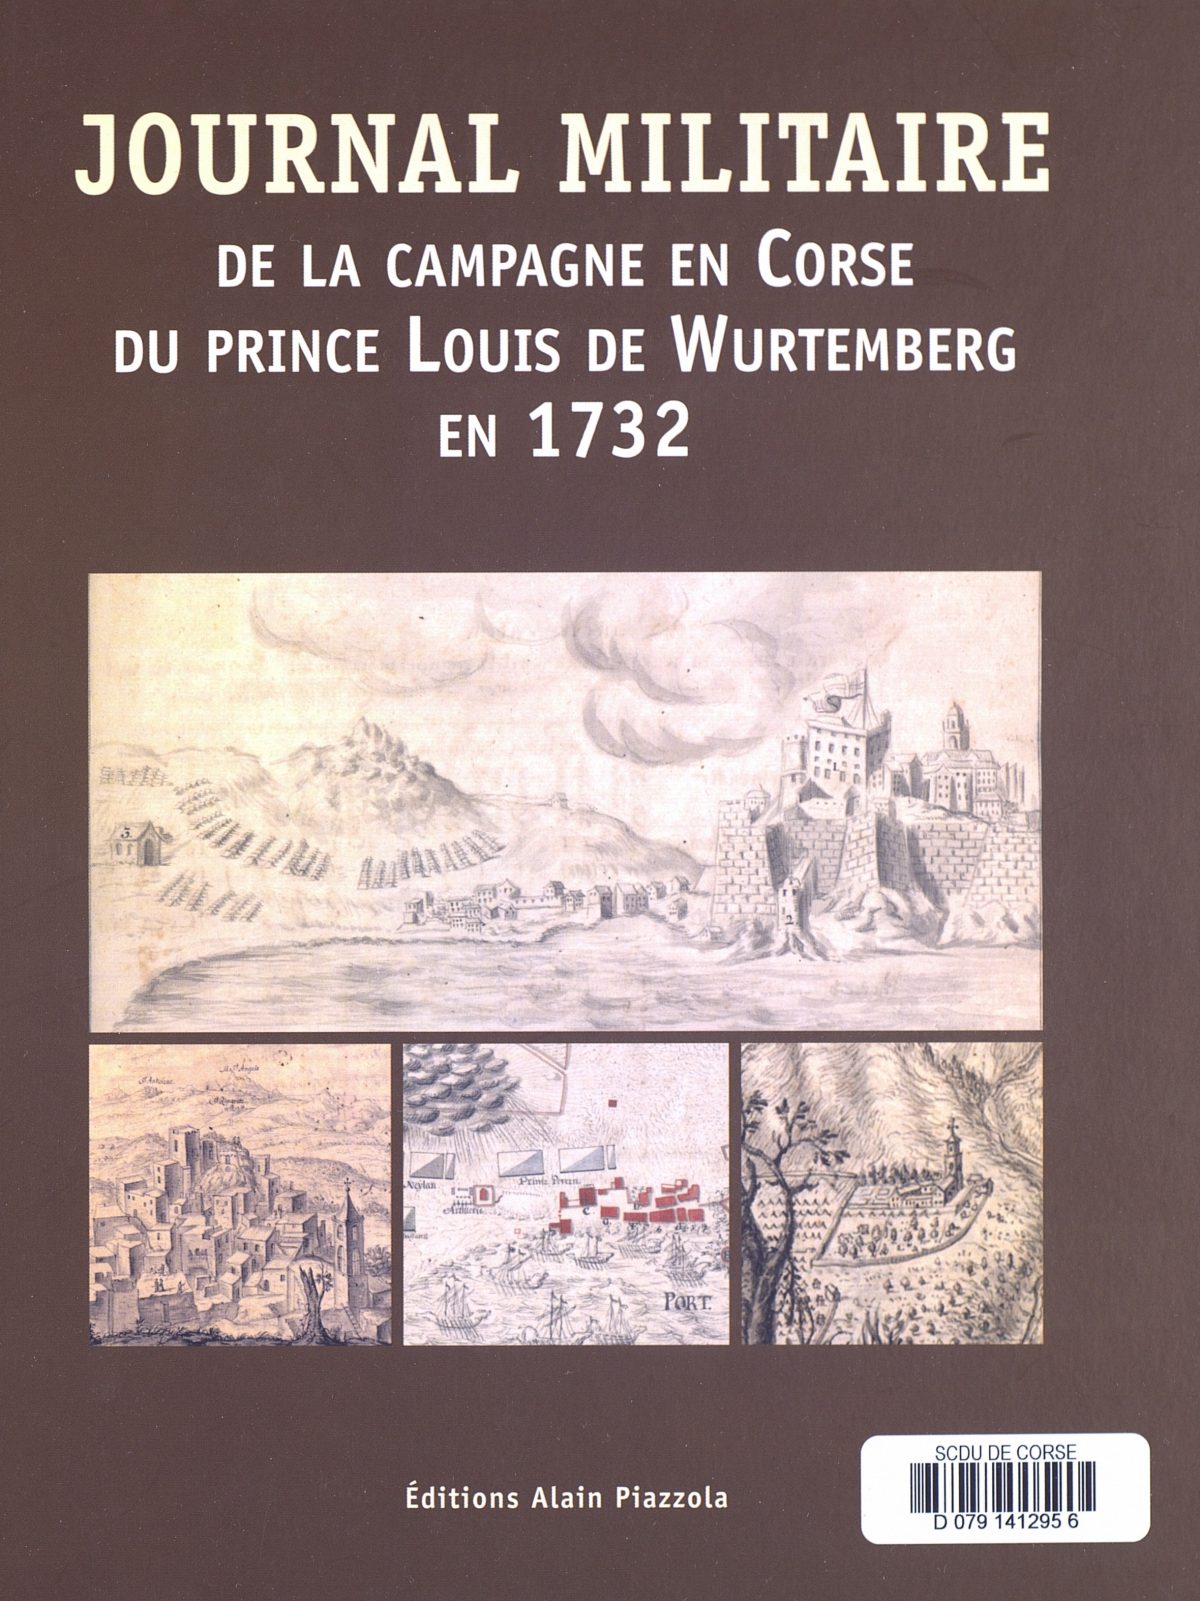 Journal militaire de la campagne en Corse du Prince Louis de Wurtemberg en 1732, Ajaccio : Editions Alain Piazzola, 2016.